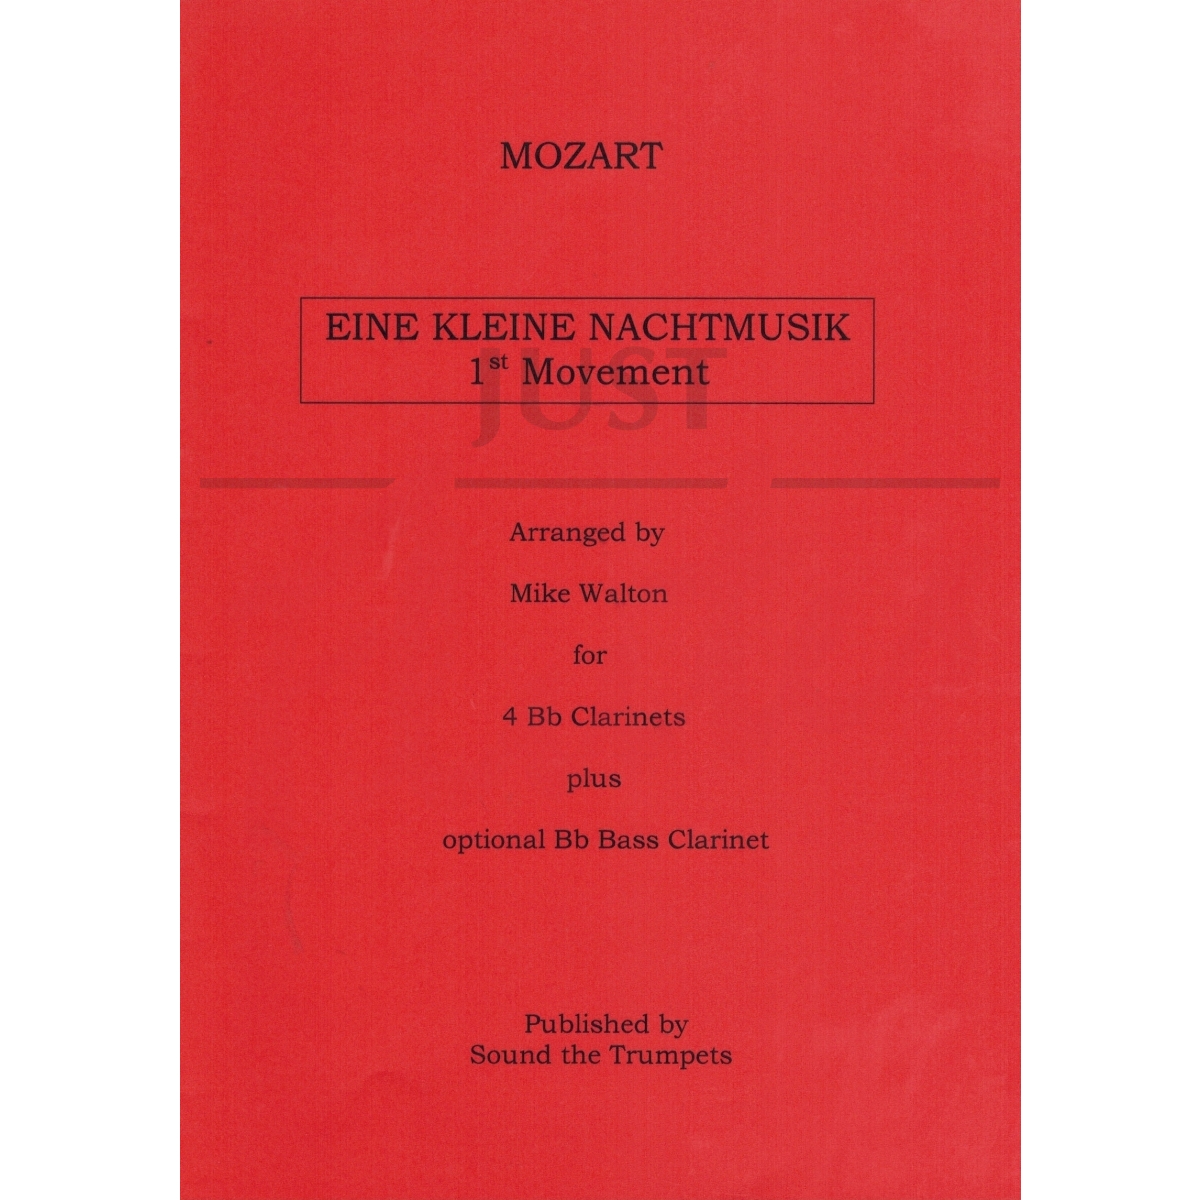 Eine Kleine Nachtmusik 1st movement [Clarinet Quartet]